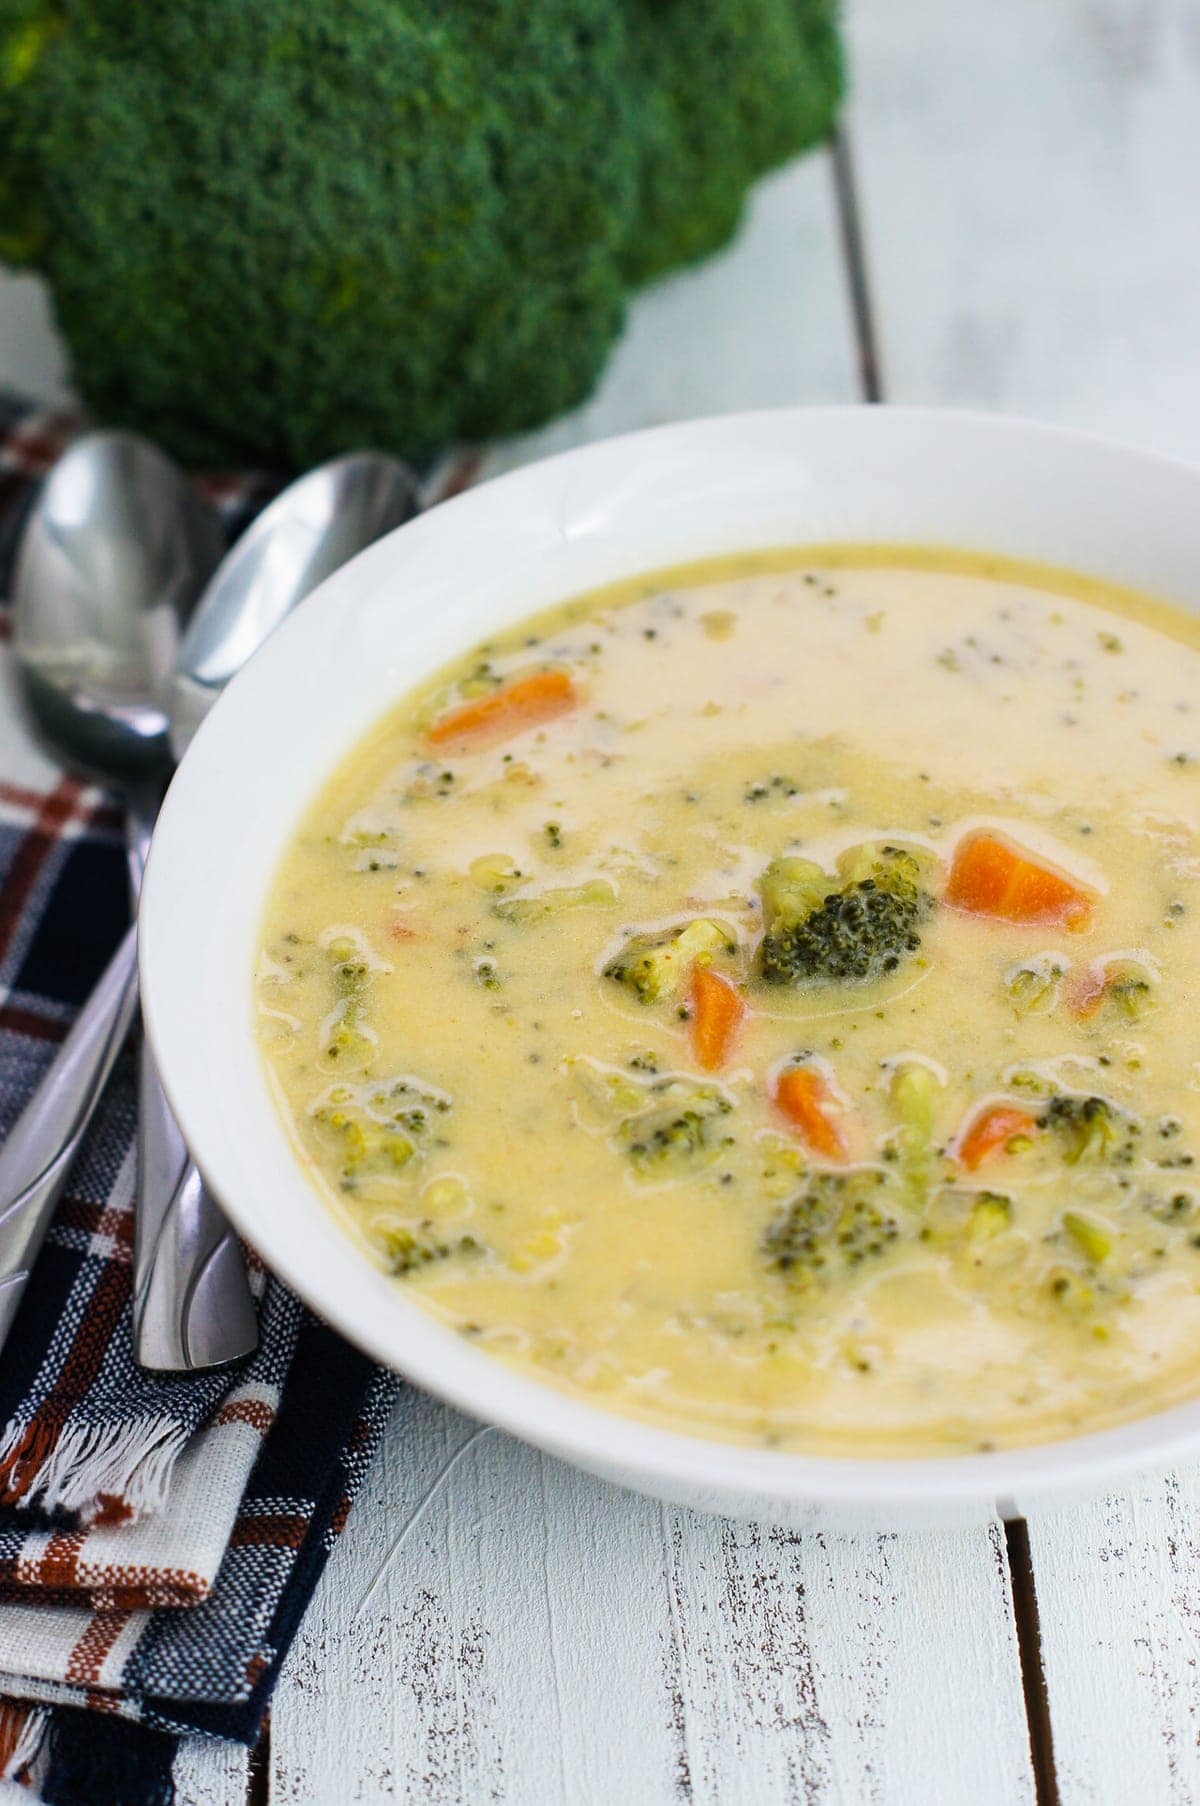 Sopa de Brócoli y Queso servida en un bowl blanco